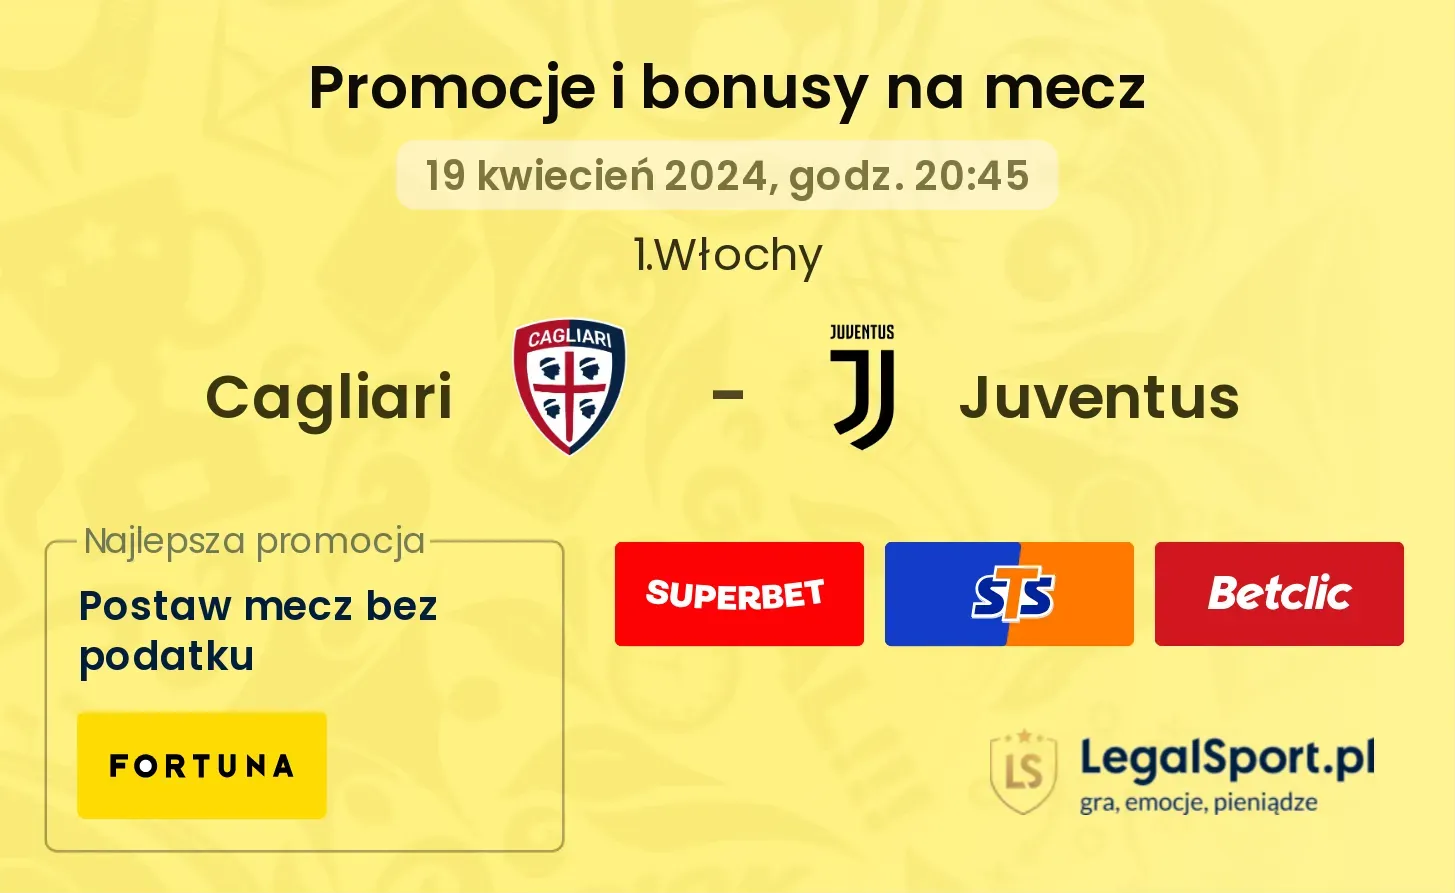 Cagliari - Juventus promocje bonusy na mecz